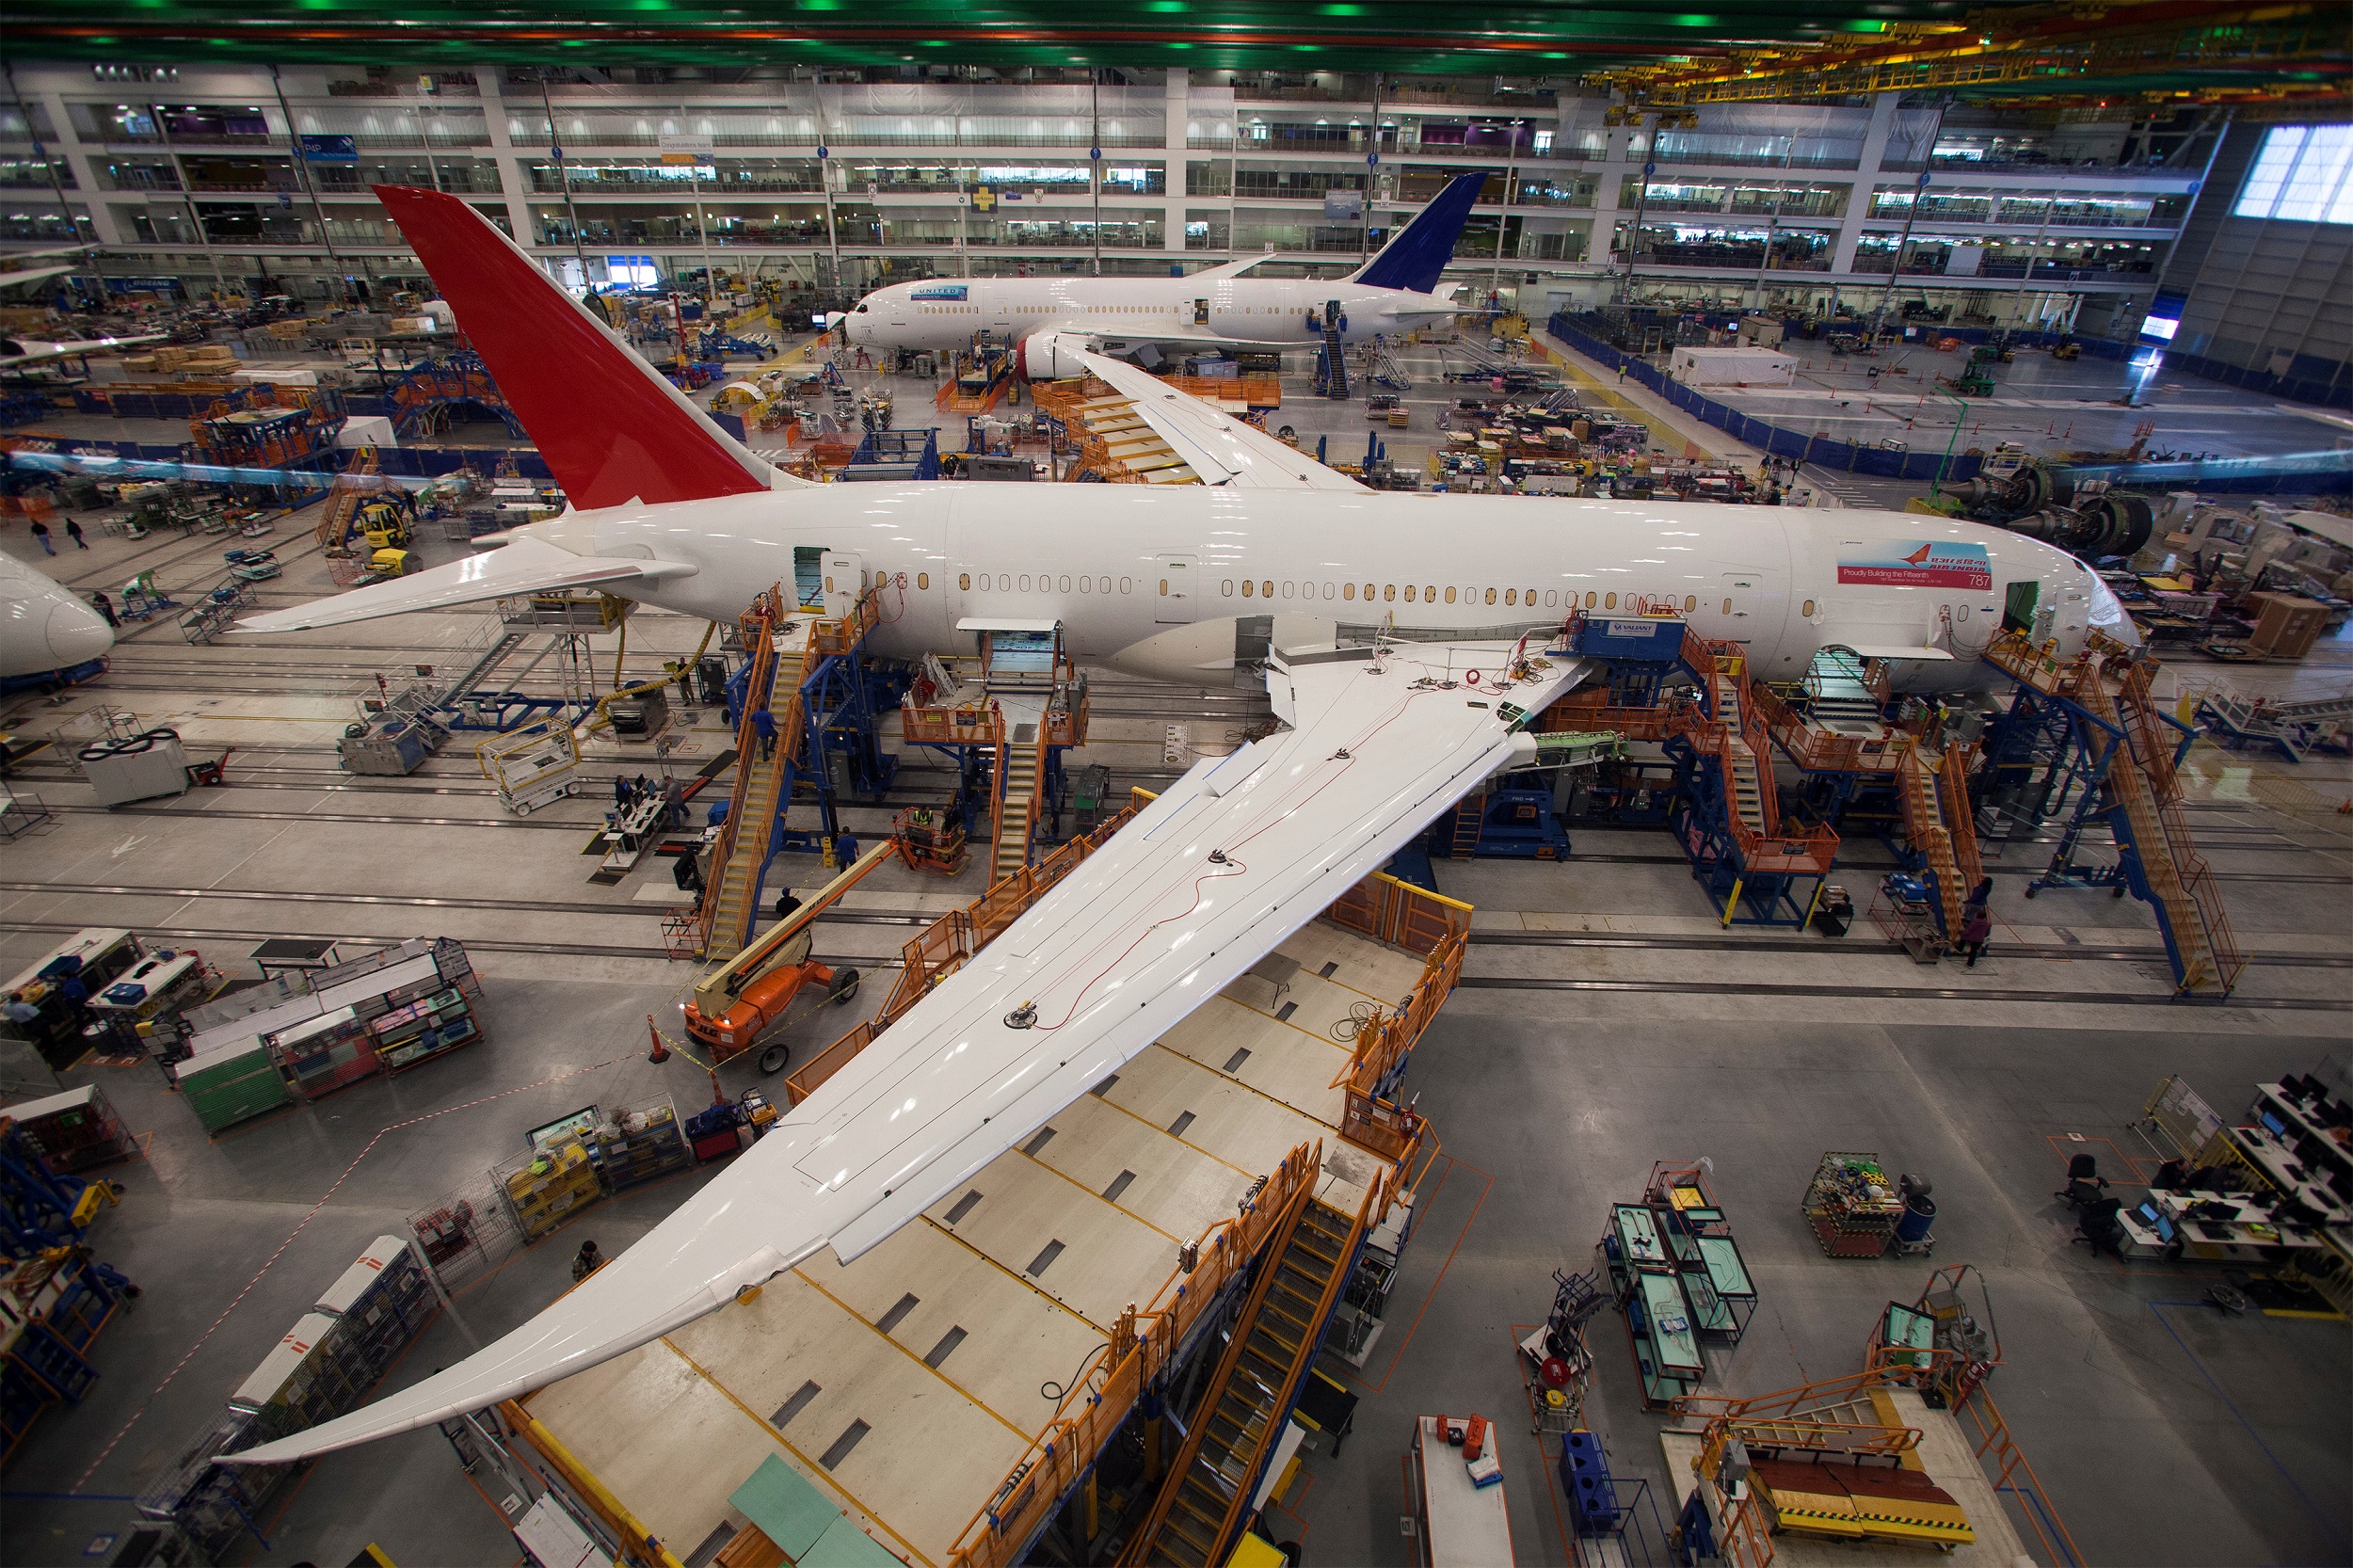 Sécurité aérienne : nouvelle enquête sur le Boeing 787 (sur les inspections de la jonction des ailes au fuselage)